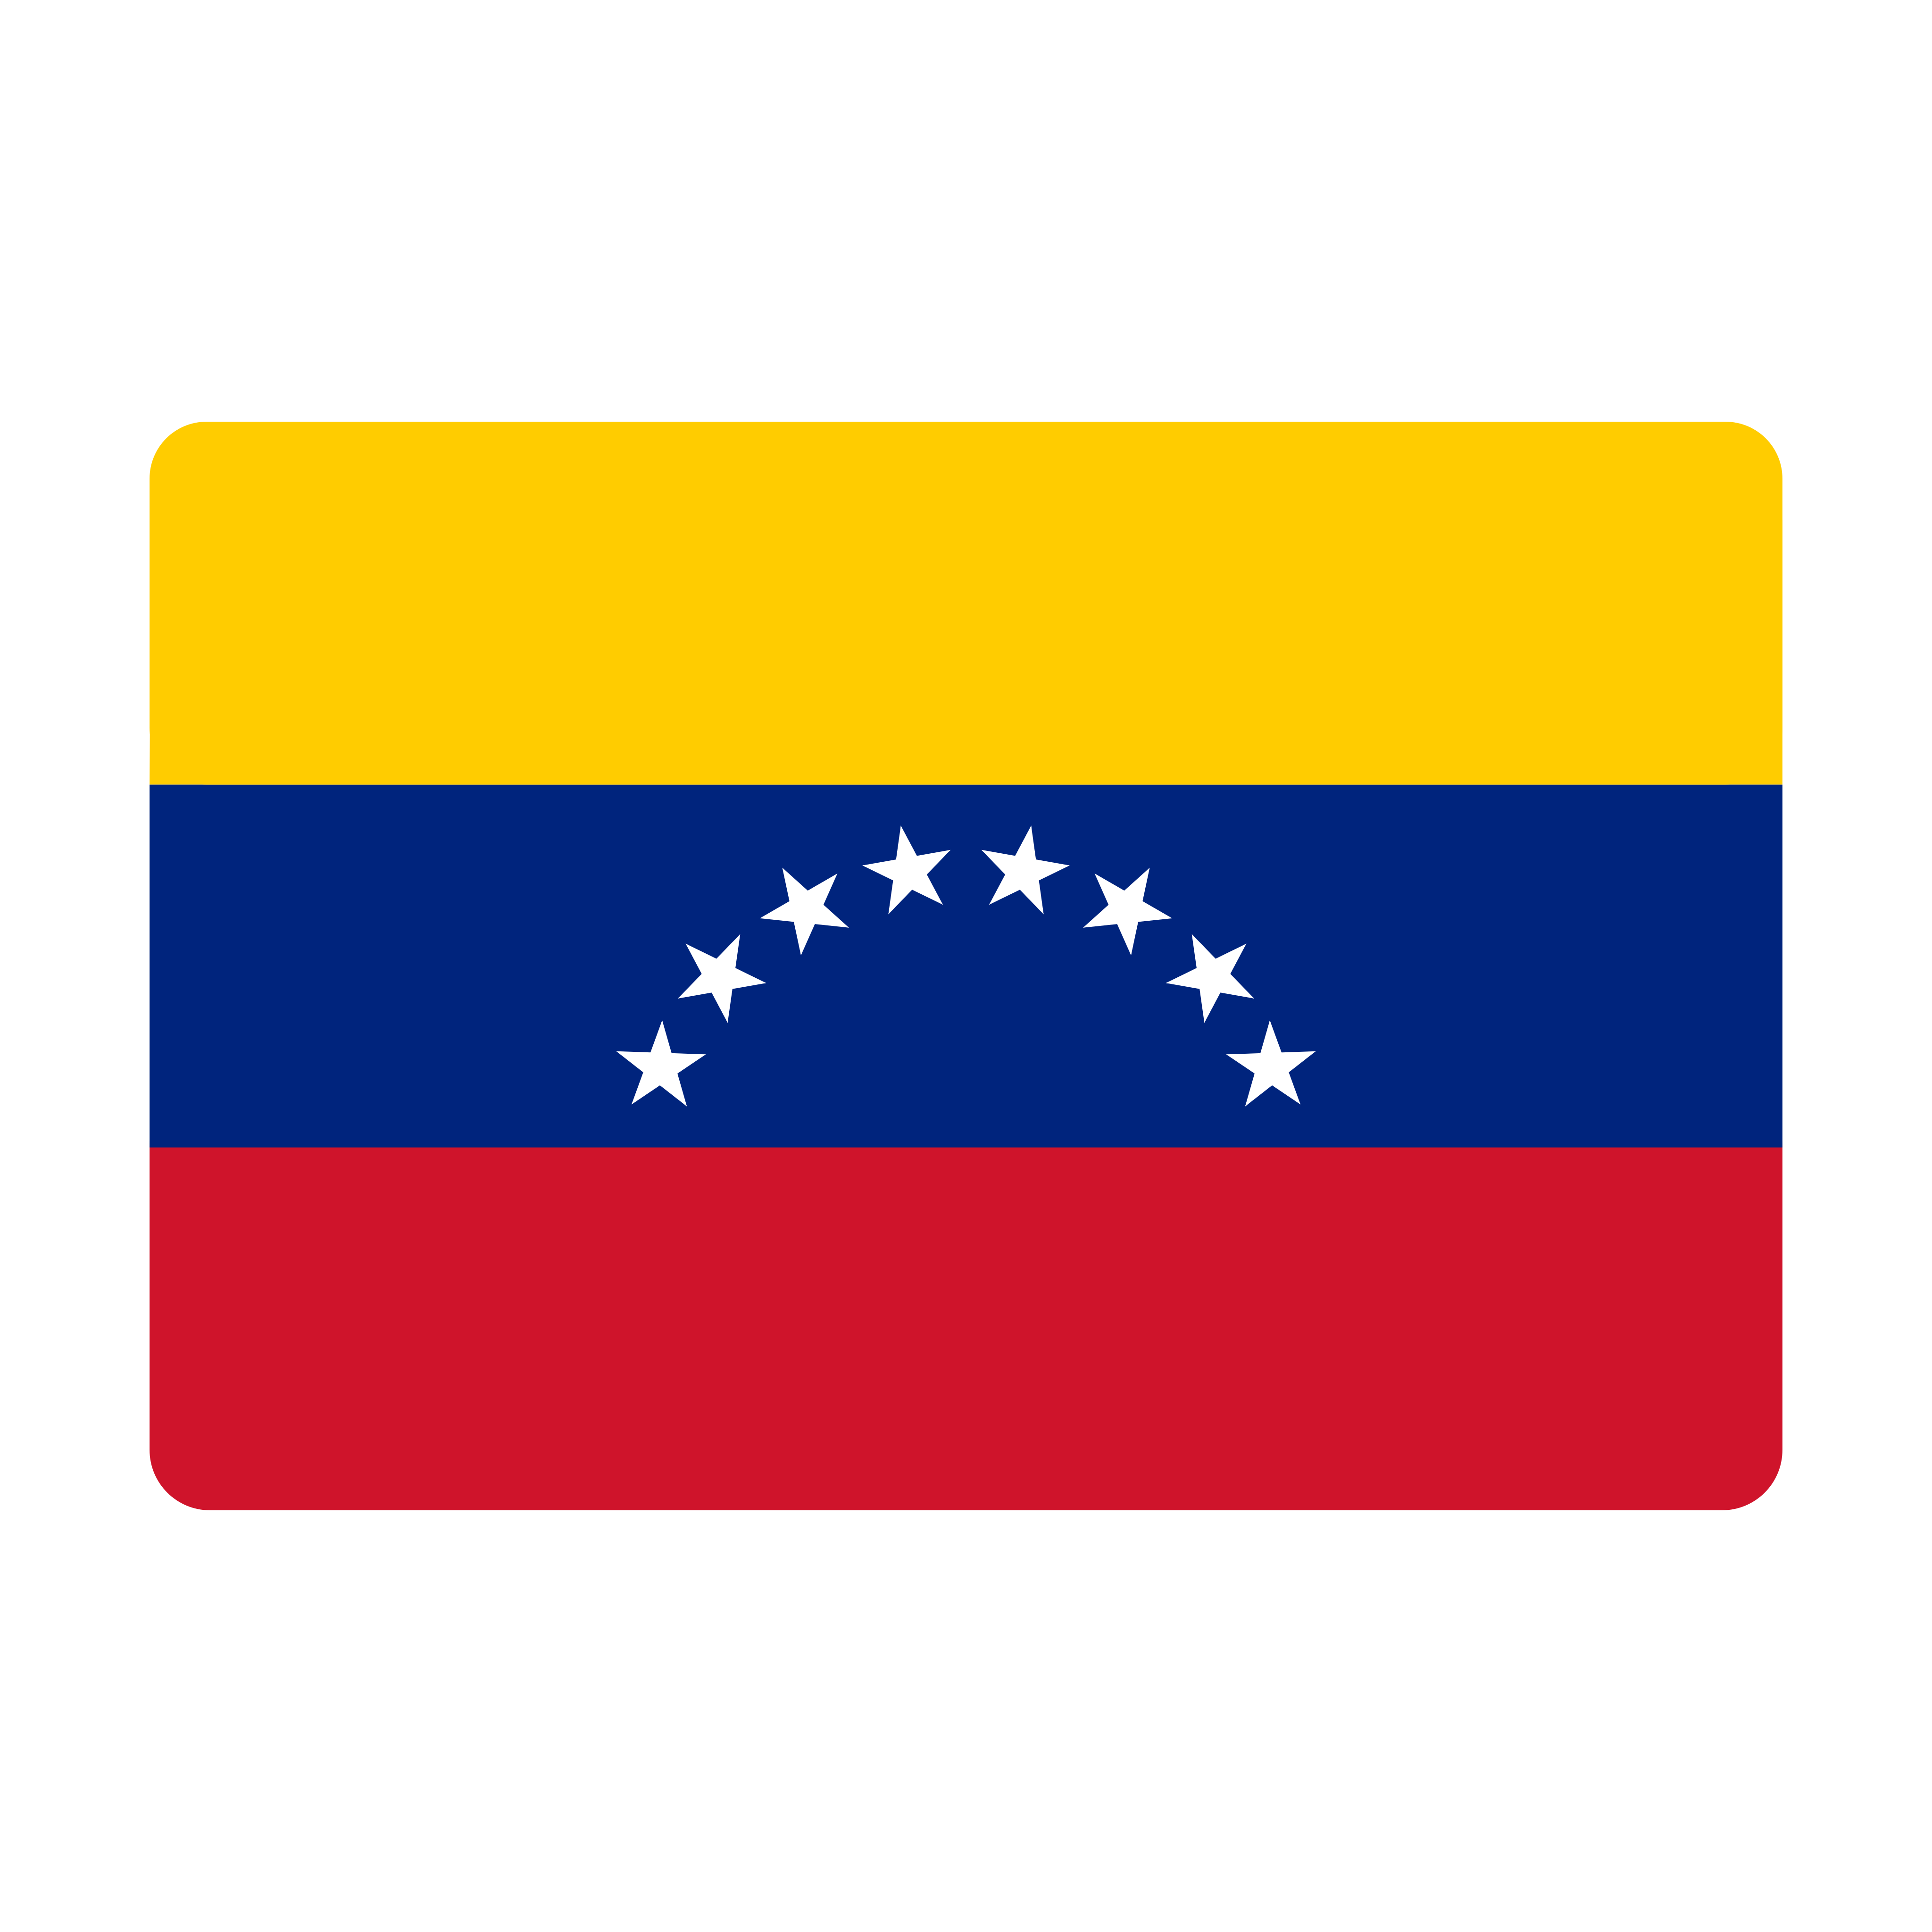 bandeira venezuela flag 0 - Flag of Venezuela